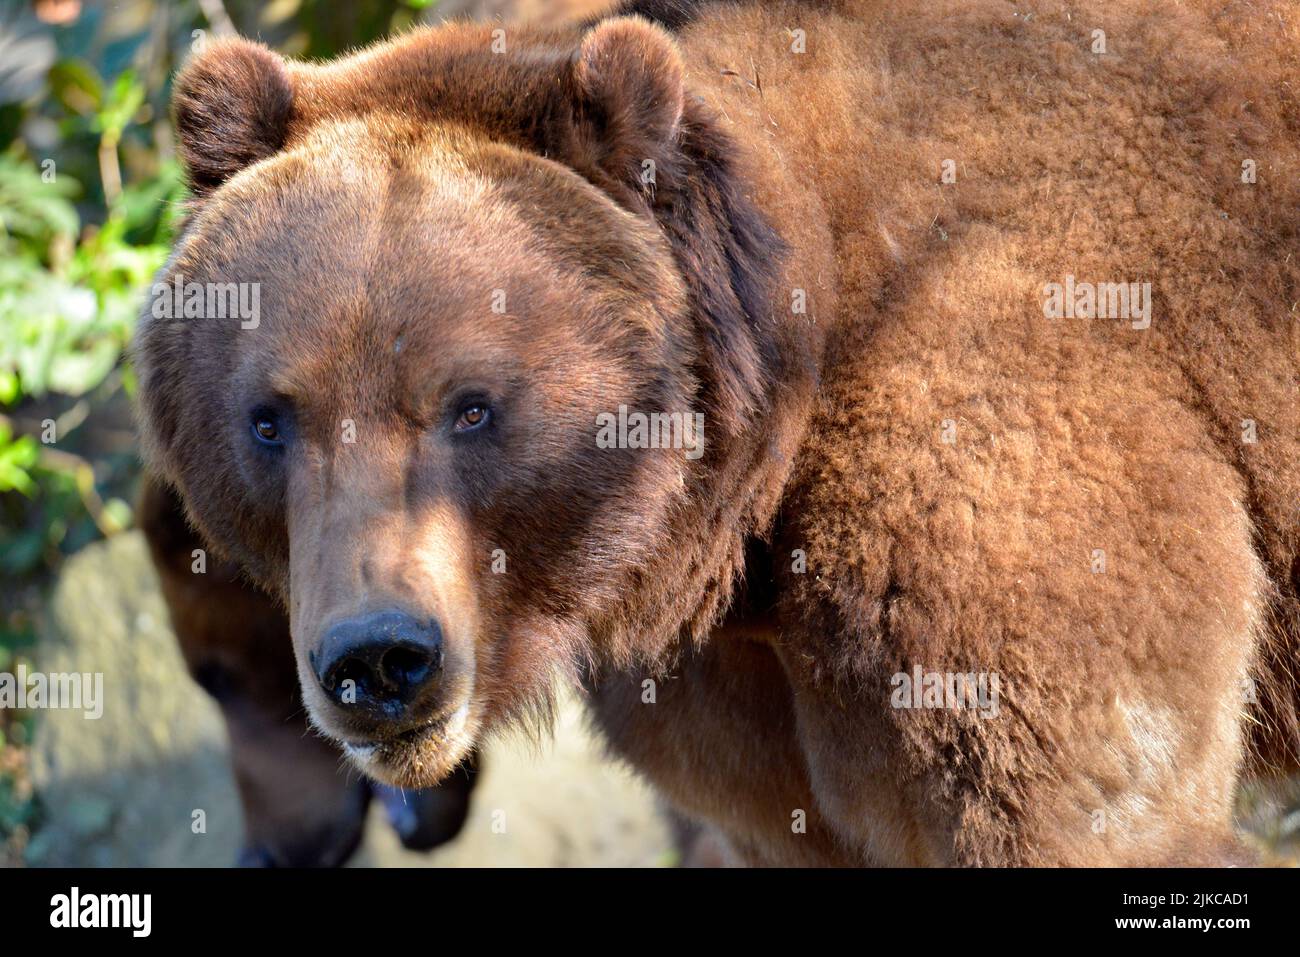 Retrato de frente de un oso Grizzly (Ursus arctos horribilis) con una mirada muy expresiva Foto de stock